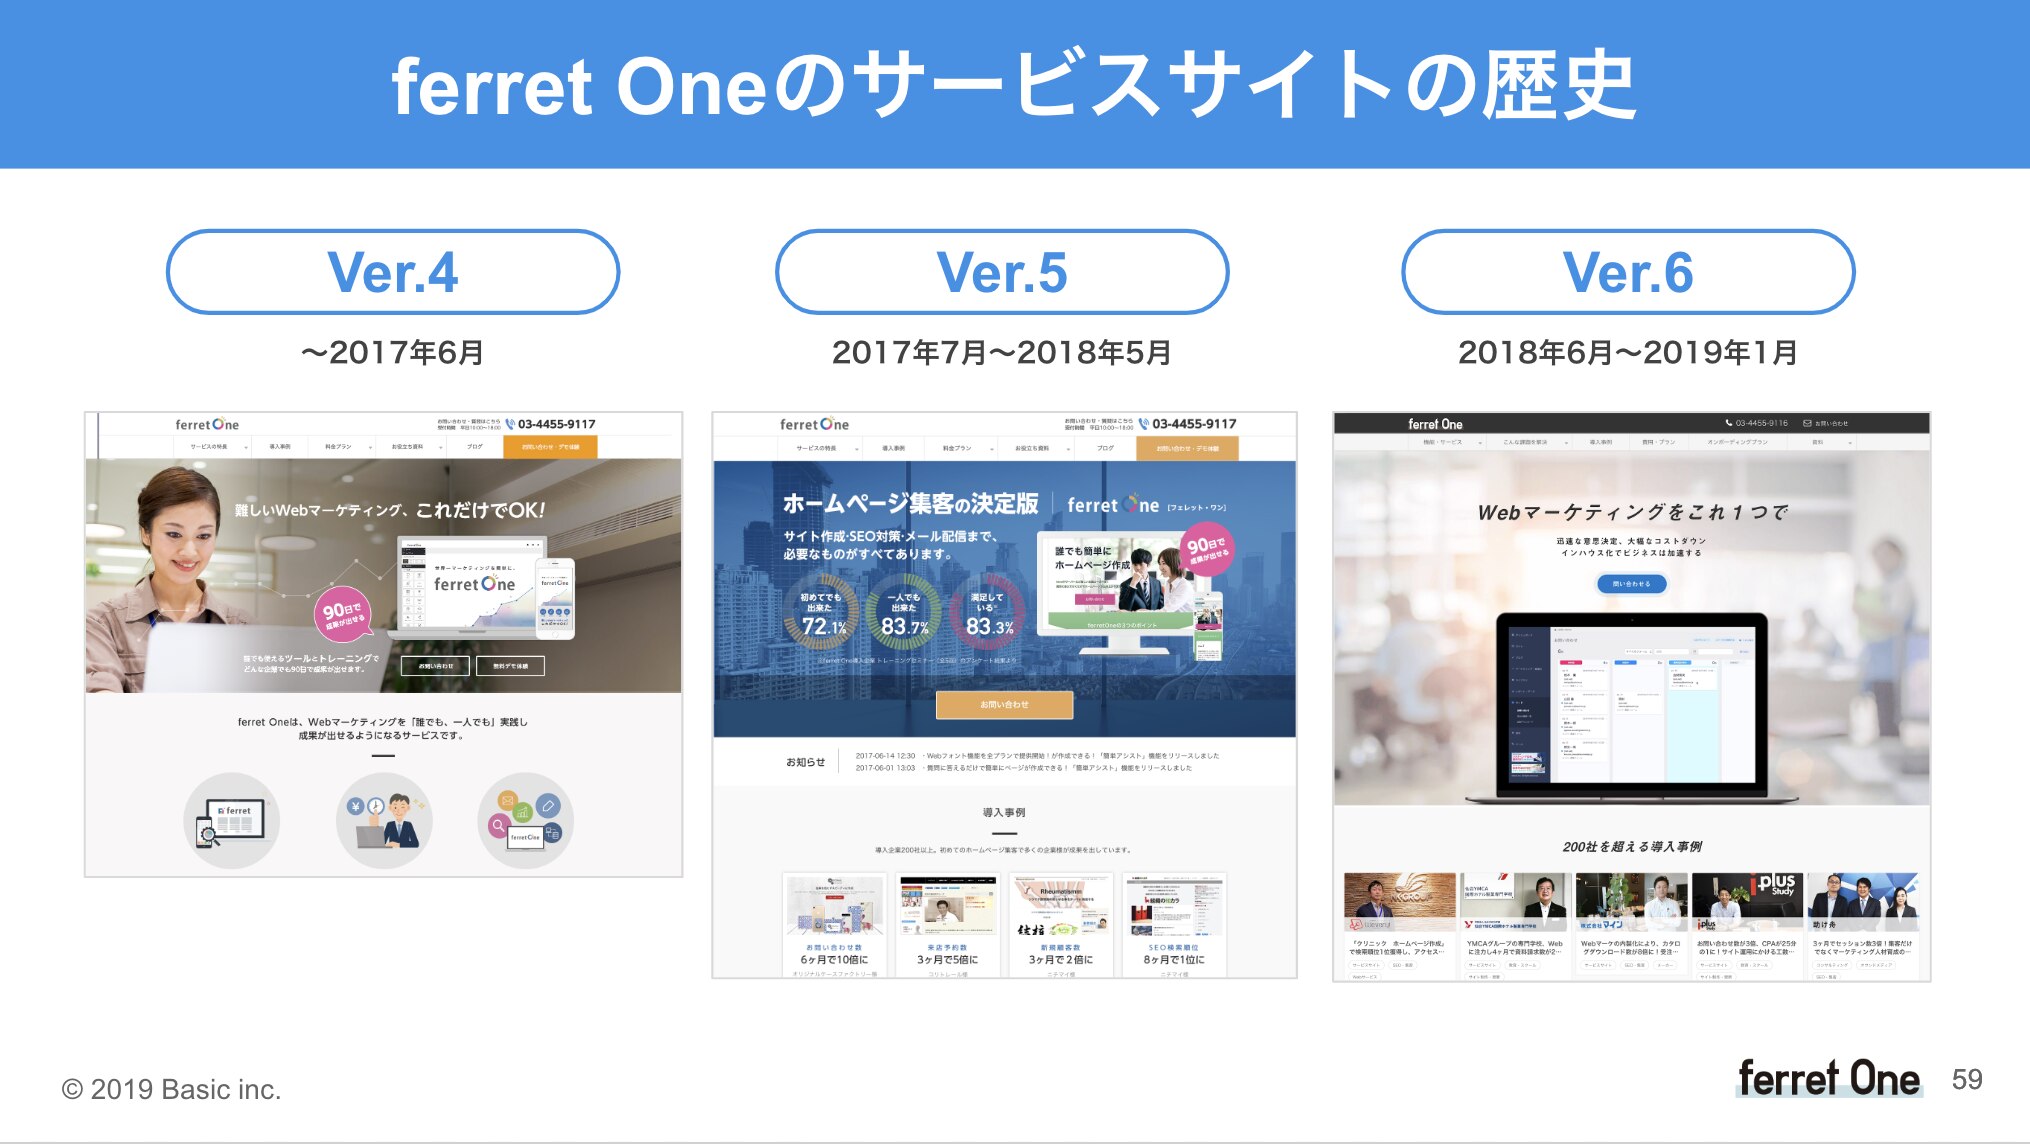 ferret Oneサービスサイトの歴史